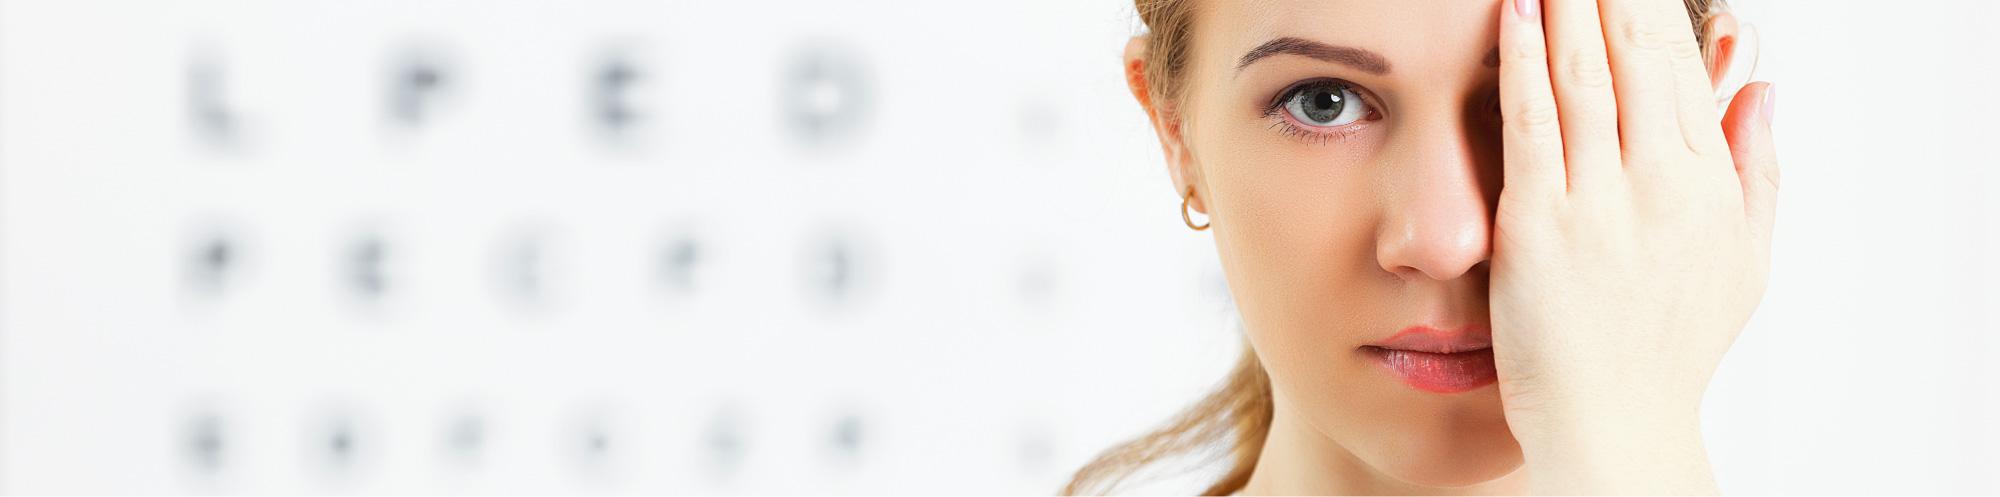 Grüner Star (Glaukom) - Augenarztpraxis Buchen